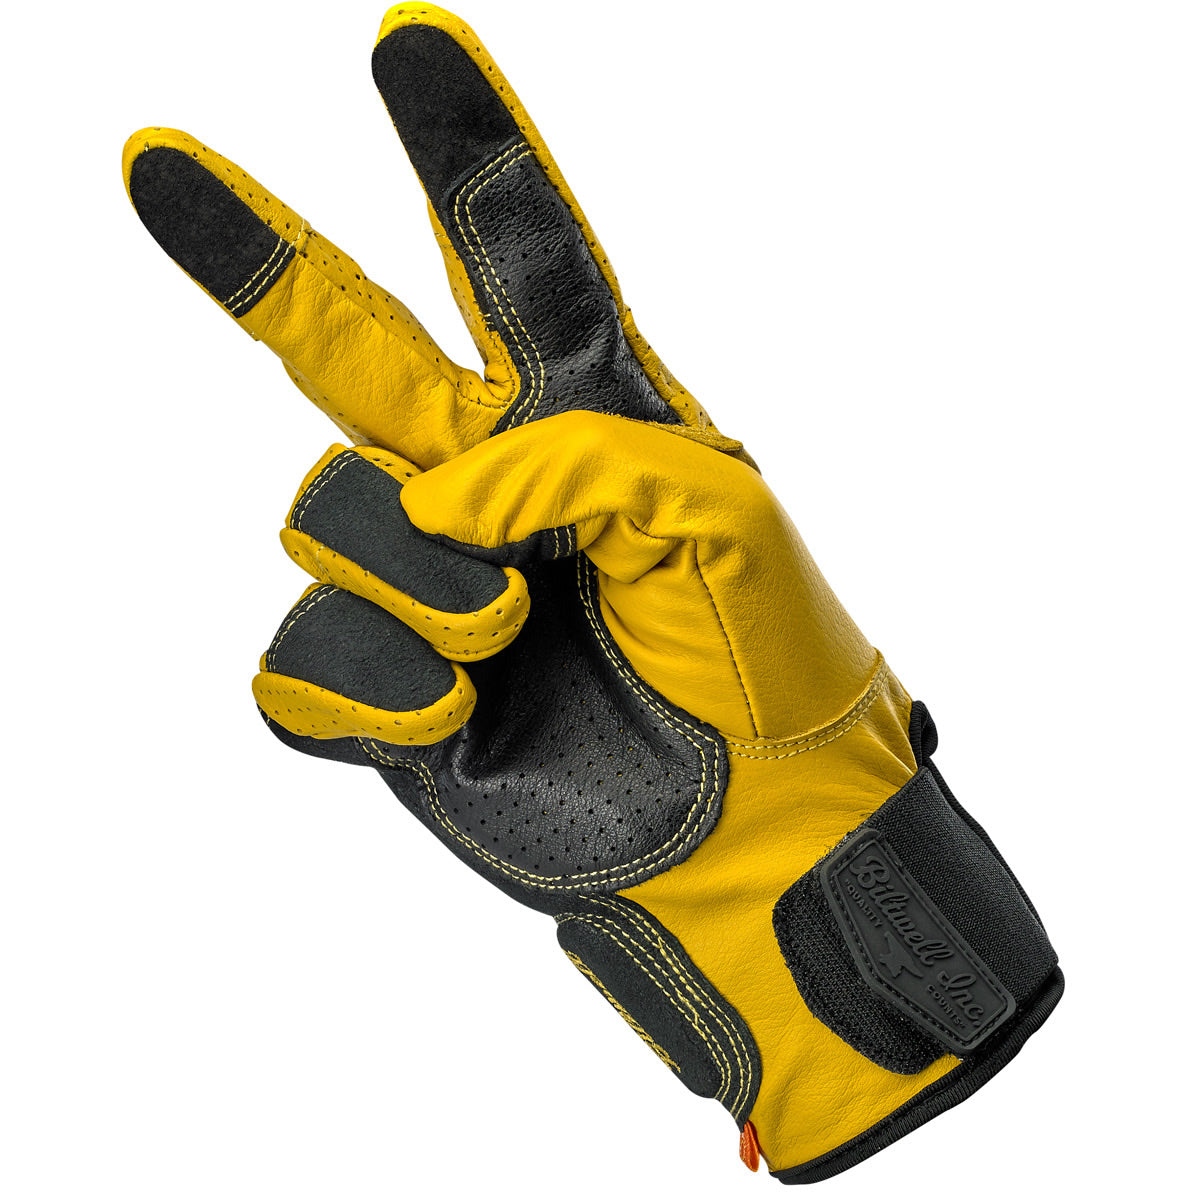 Biltwell Gold Work 2.0 Gloves - 1510-0707-005